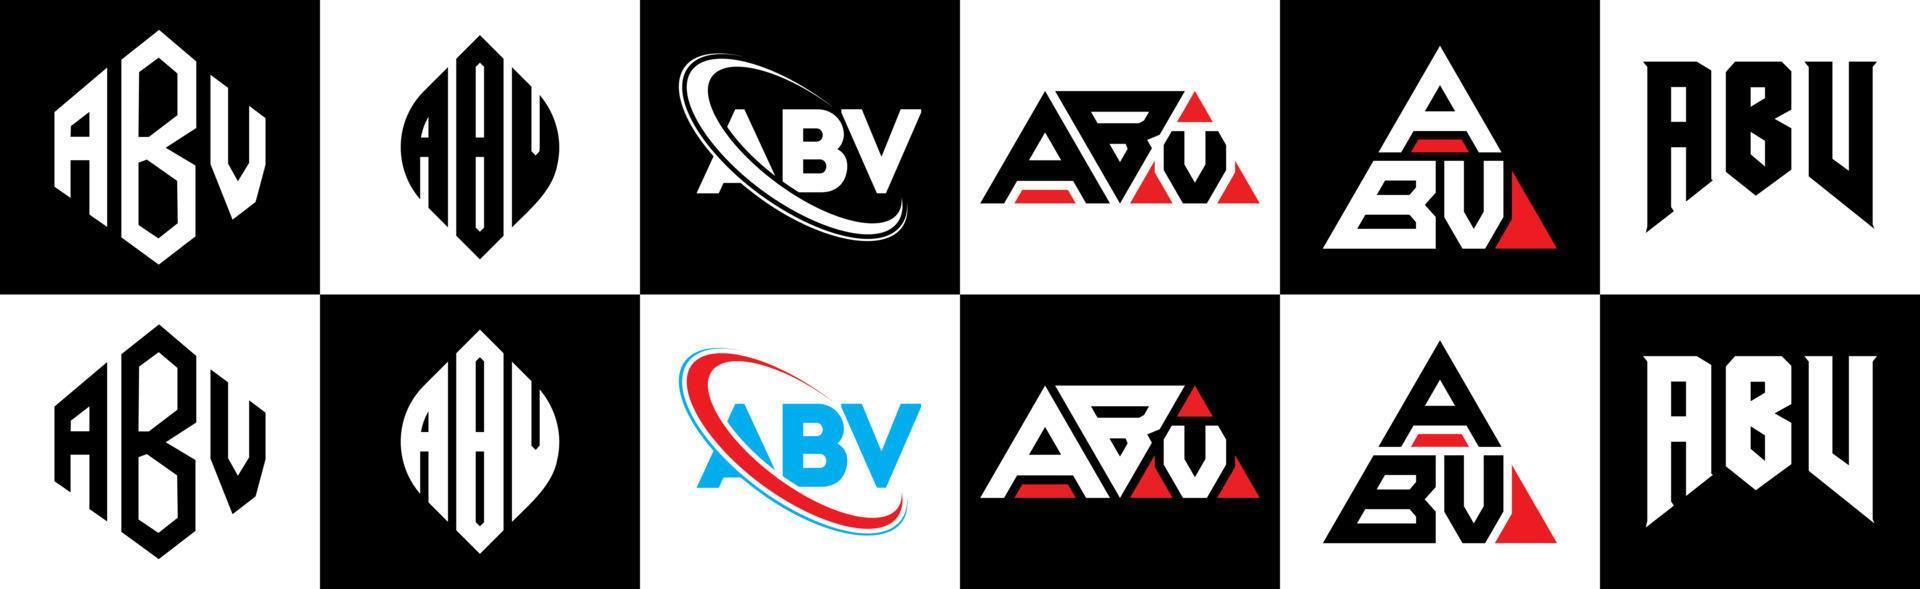 création de logo de lettre abv en six styles. abv polygone, cercle, triangle, hexagone, style plat et simple avec logo de lettre de variation de couleur noir et blanc dans un plan de travail. logo abv minimaliste et classique vecteur